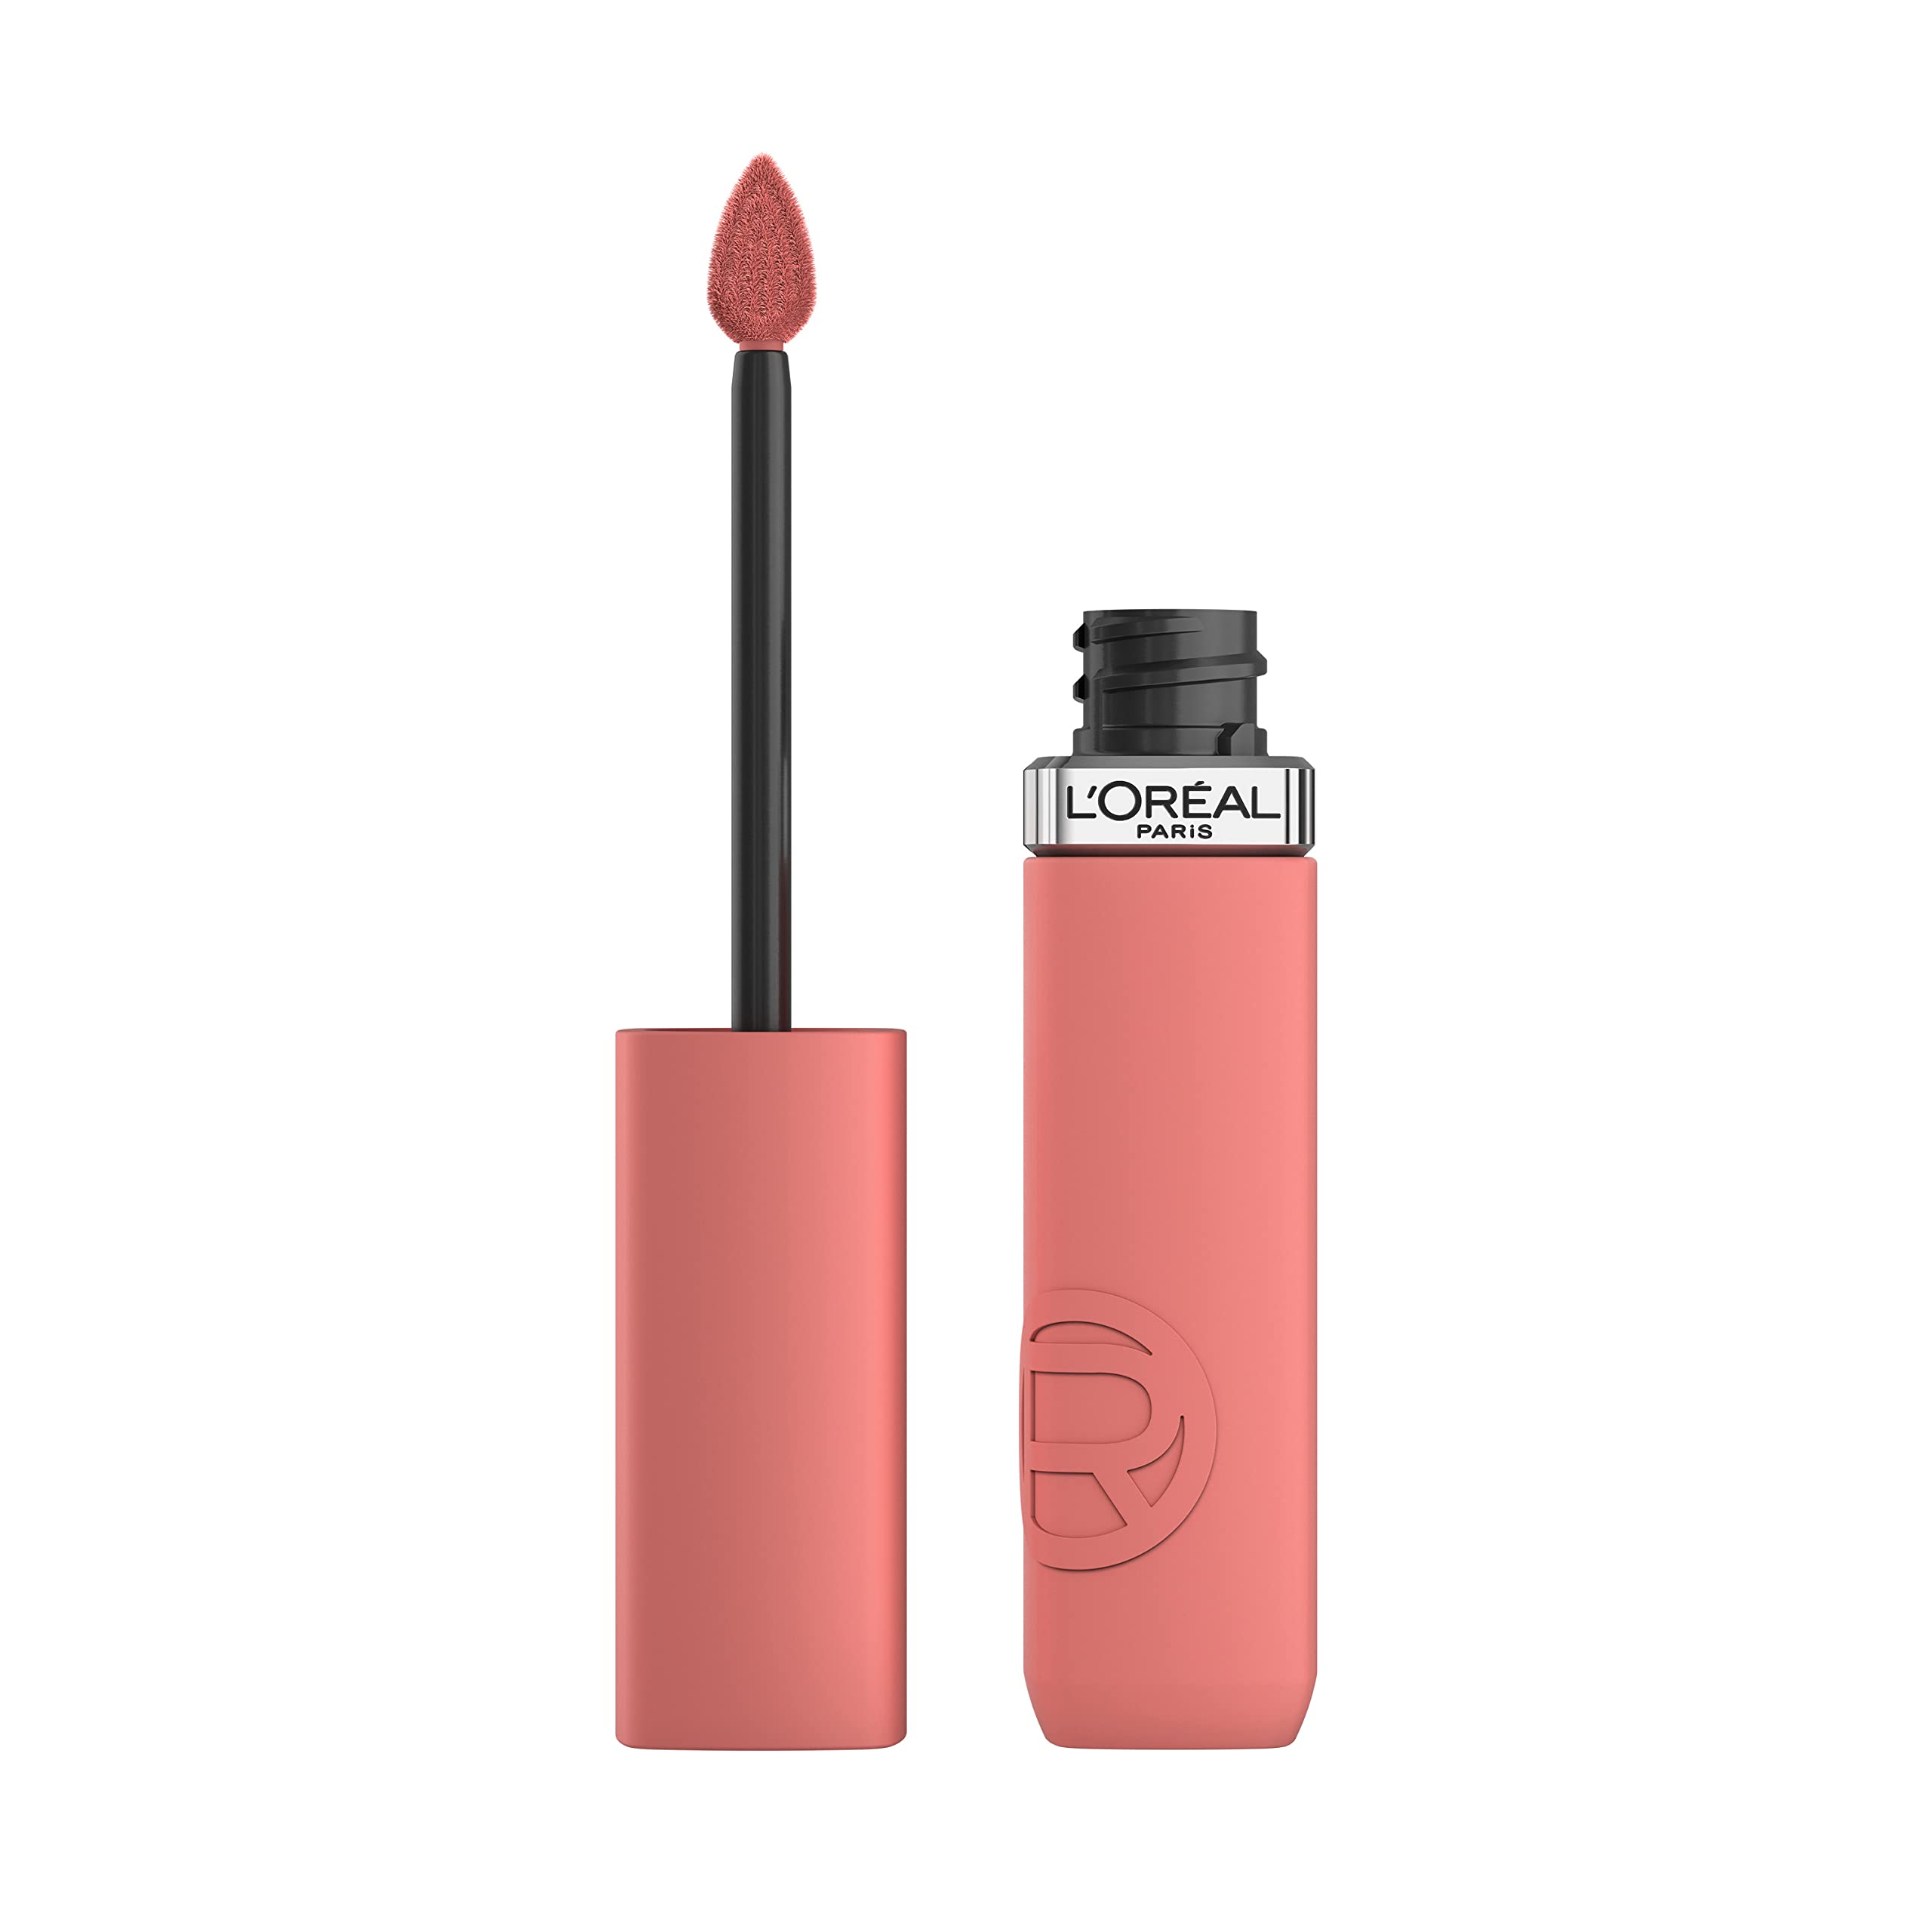 L'Oreal Paris Infallible Matte Resistance Liquid Lipstick, up to 16 Hour Wear, Tropical Vacay 210, 0.17 Fl Oz